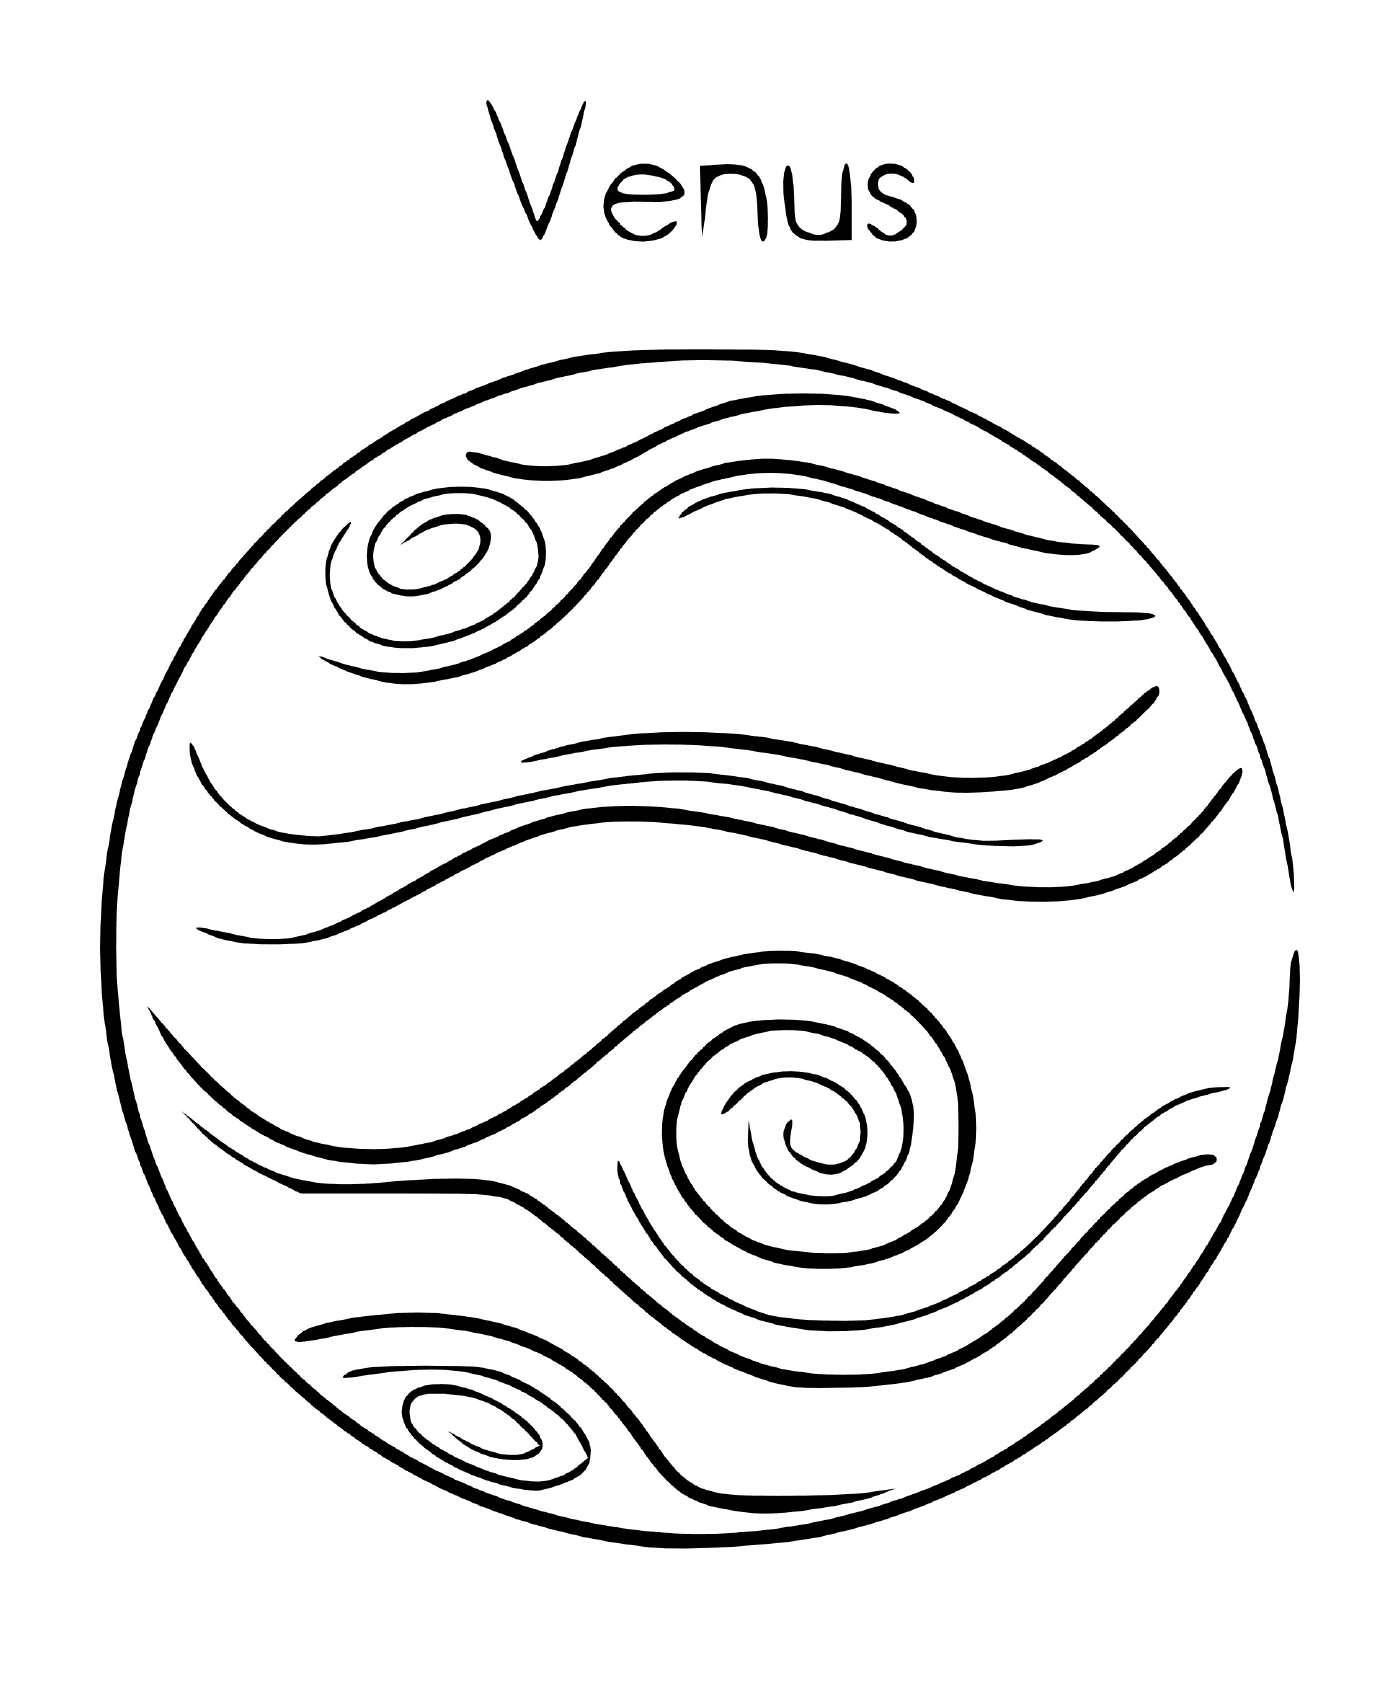  Planet Venus im Orbit 